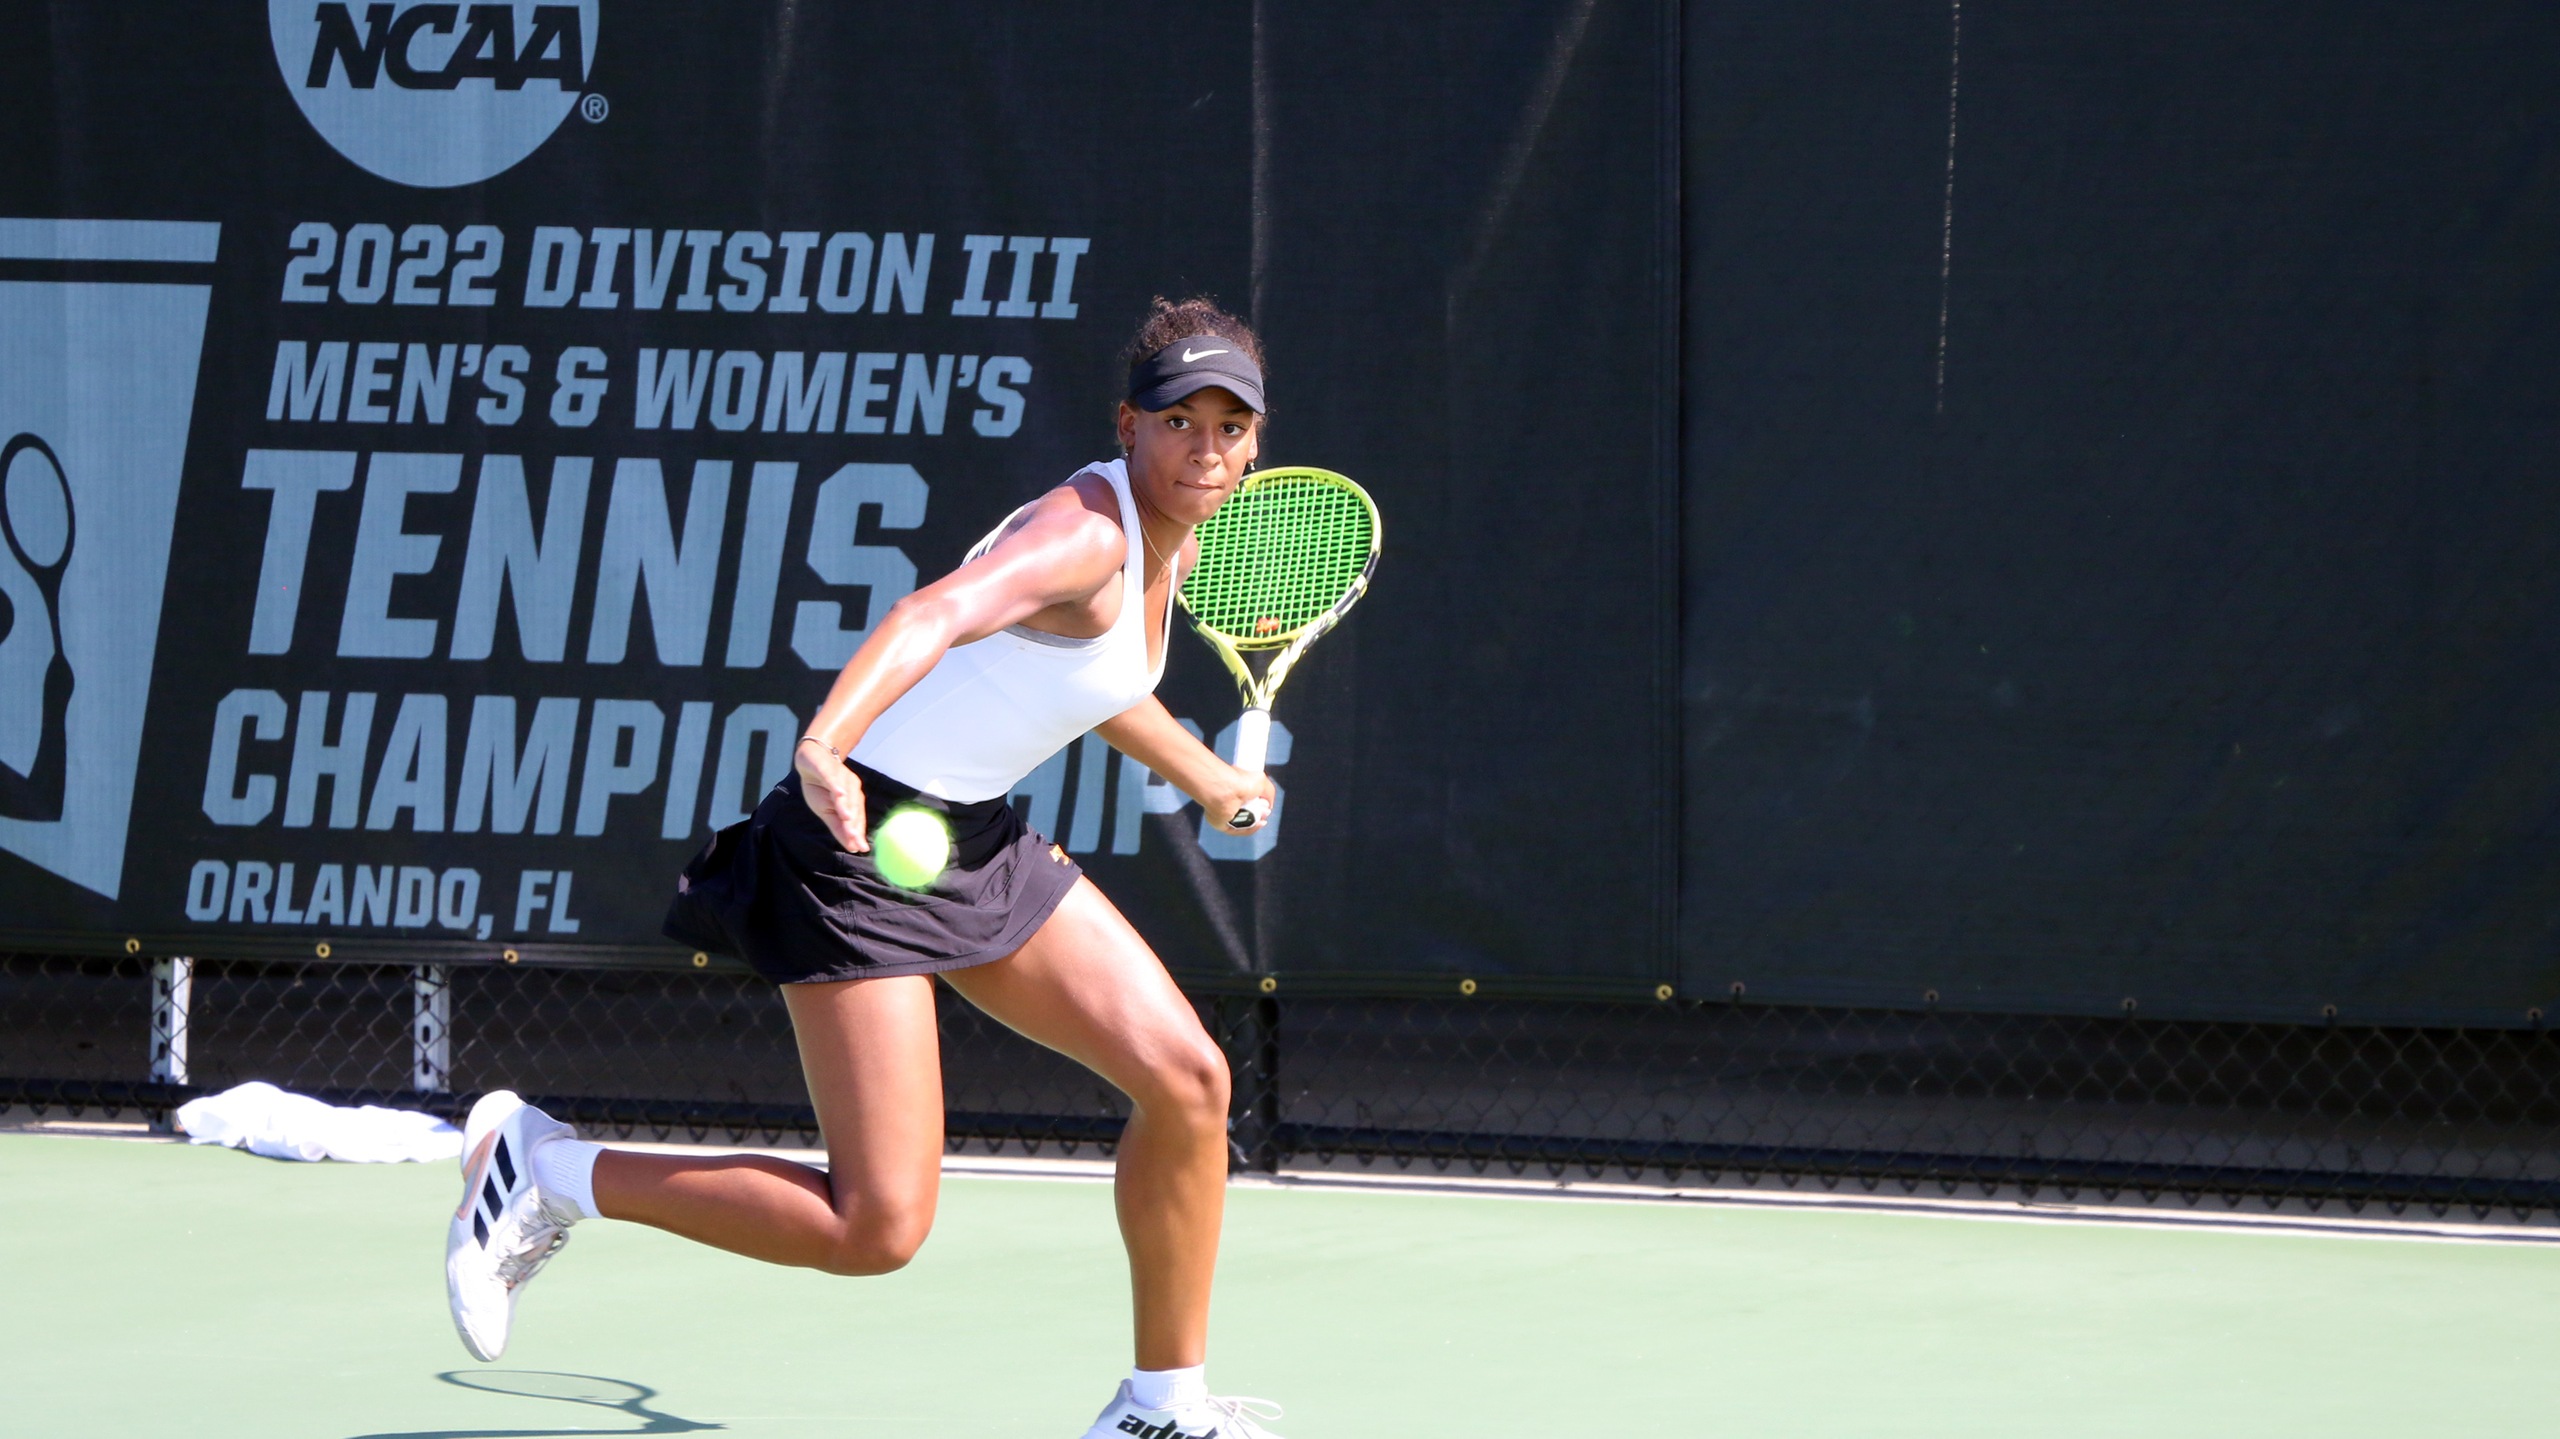 Ella Brissett earned a 6-0, 6-0 win in singles